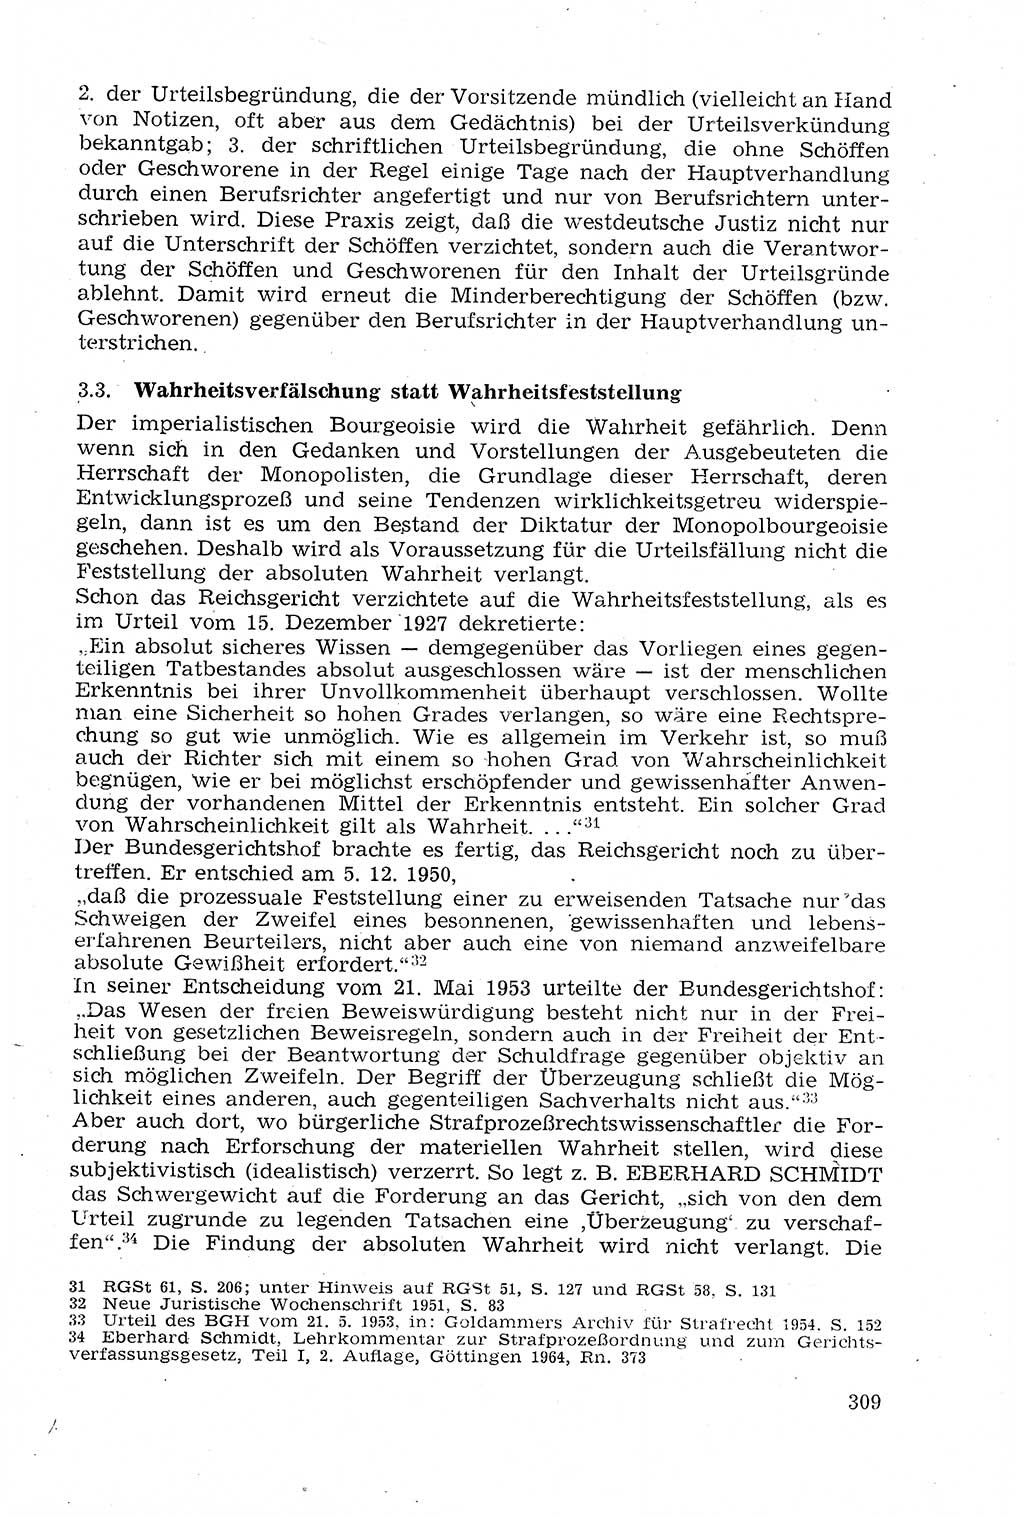 Strafprozeßrecht der DDR (Deutsche Demokratische Republik), Lehrmaterial 1969, Seite 309 (Strafprozeßr. DDR Lehrmat. 1969, S. 309)